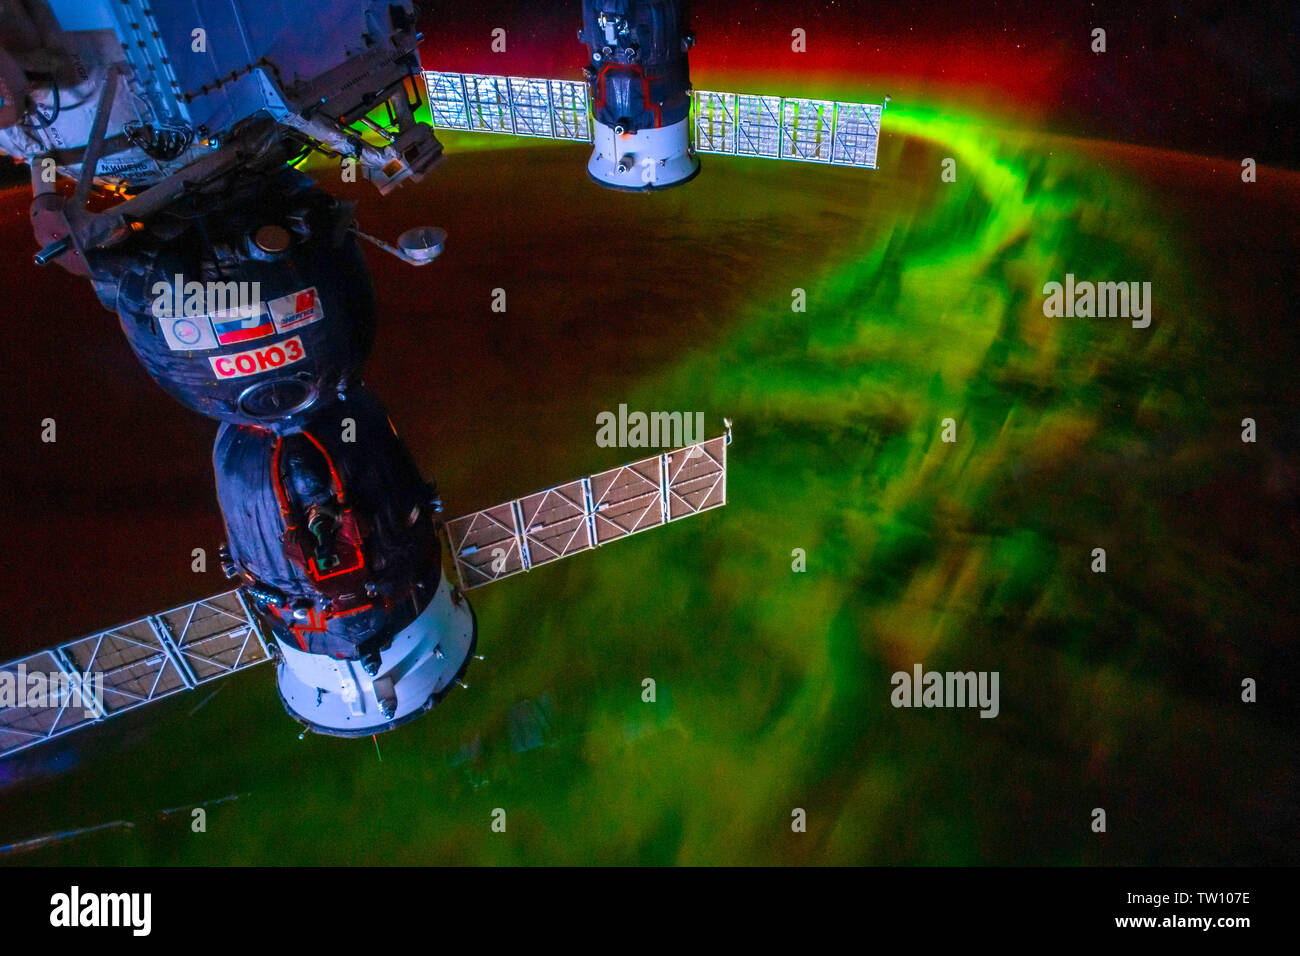 Aurora Borealis encadrée dans l'ISS. La beauté dans la nature de notre planète Terre vue de la Station spatiale internationale (ISS). L'image est une fonction dom Banque D'Images